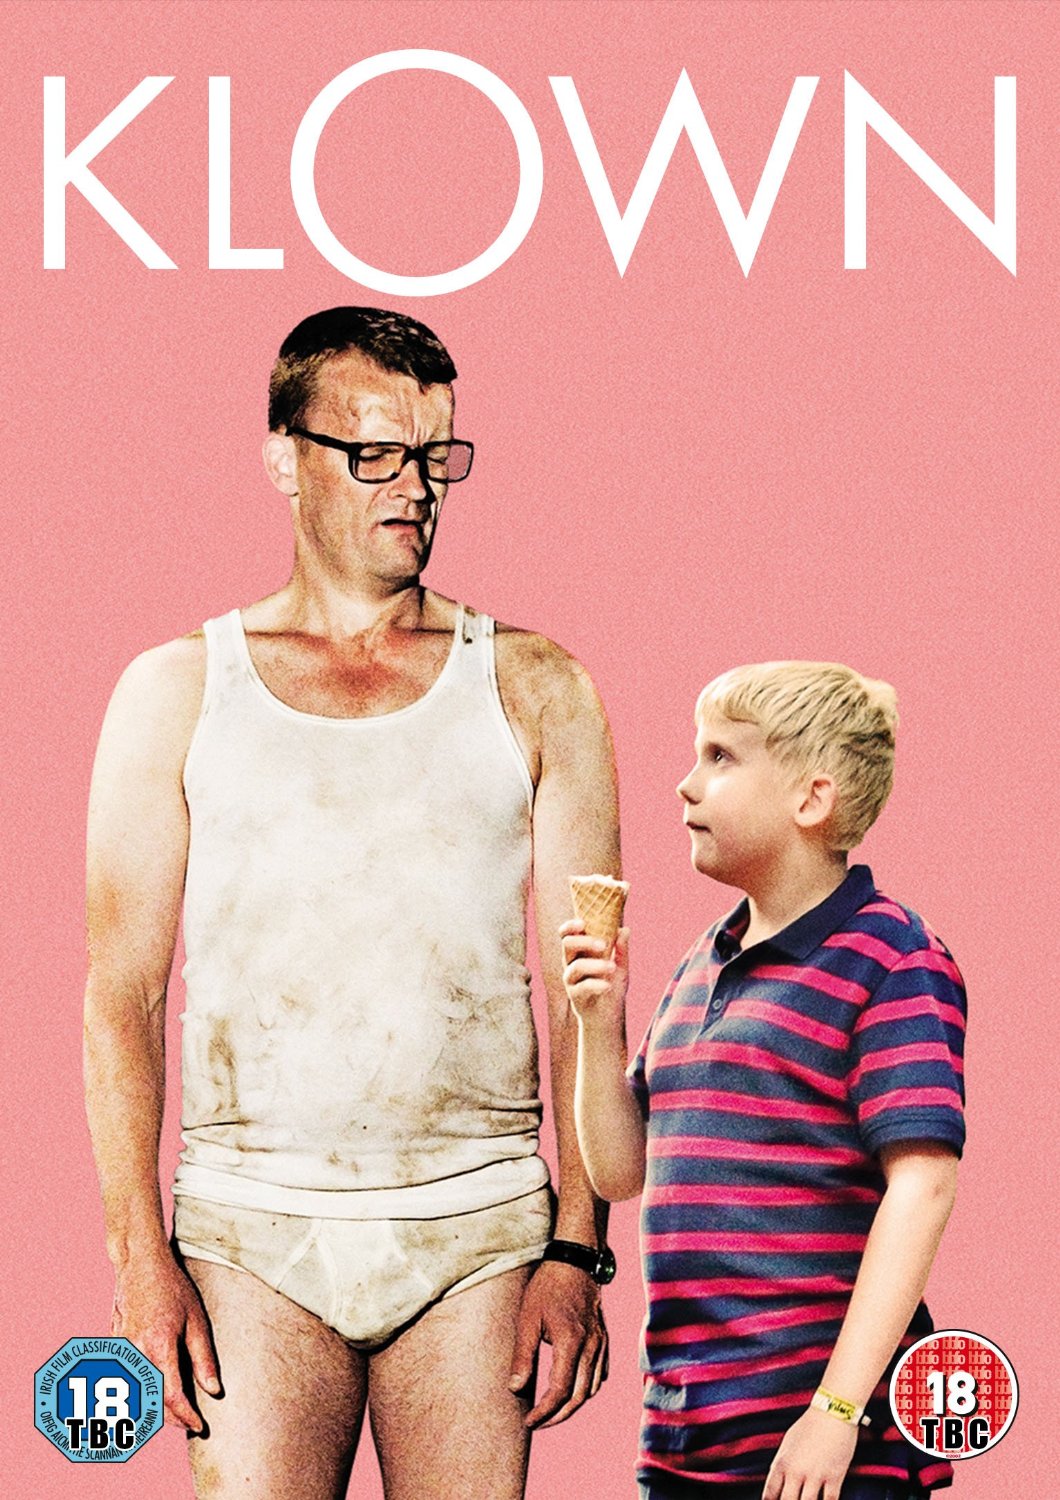 Klown 2010 Movie